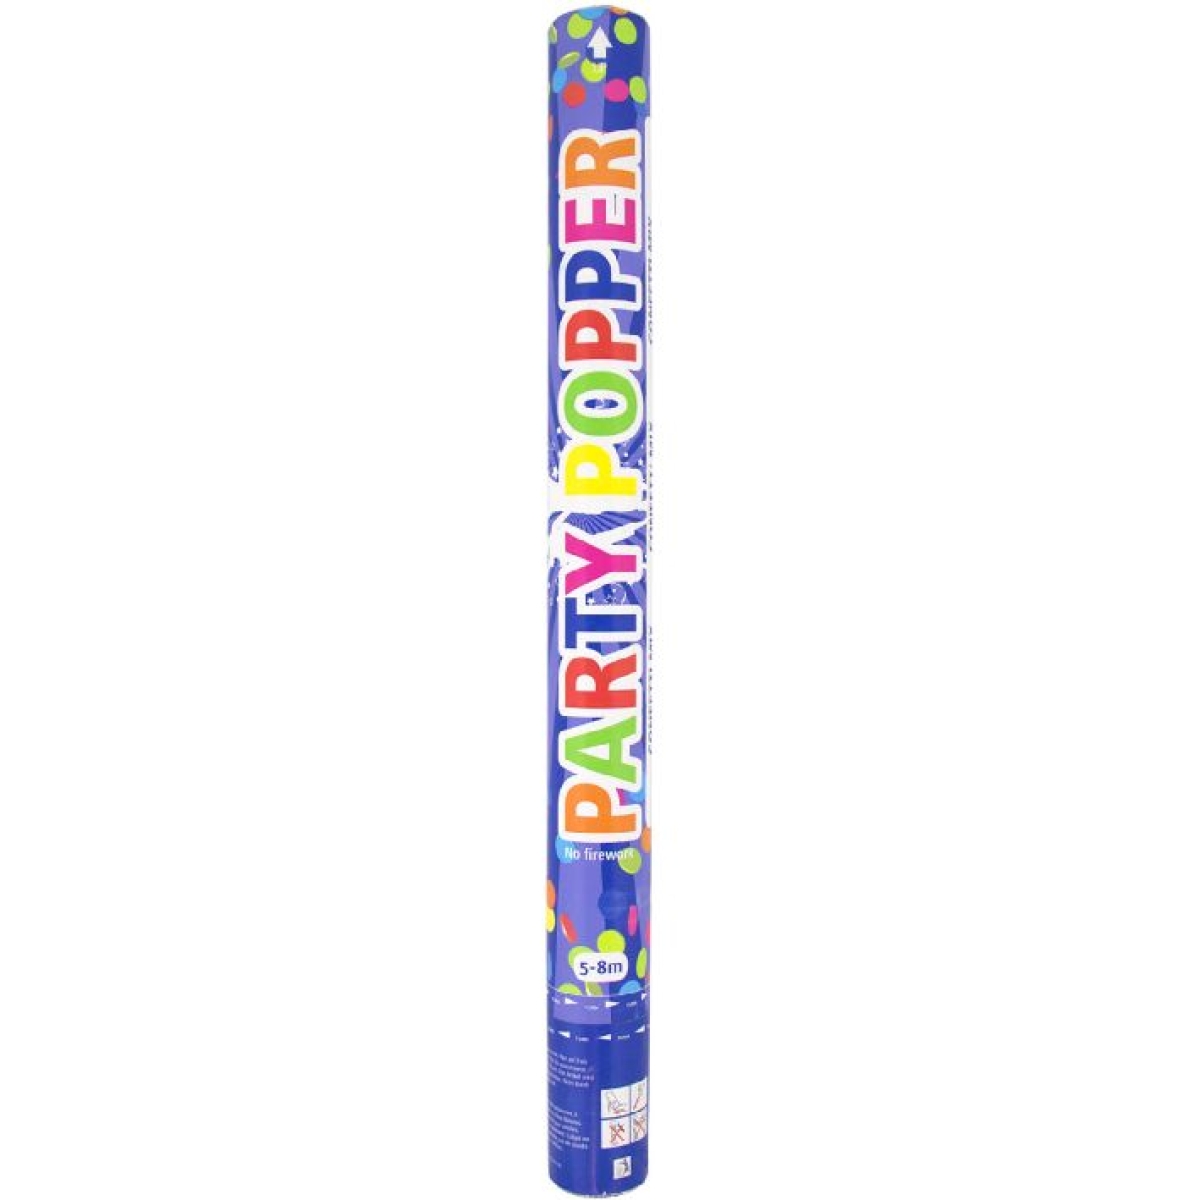 FolatConfetti cannon 57cm confetti thrower colorful 62911Article-No: 8714572629119